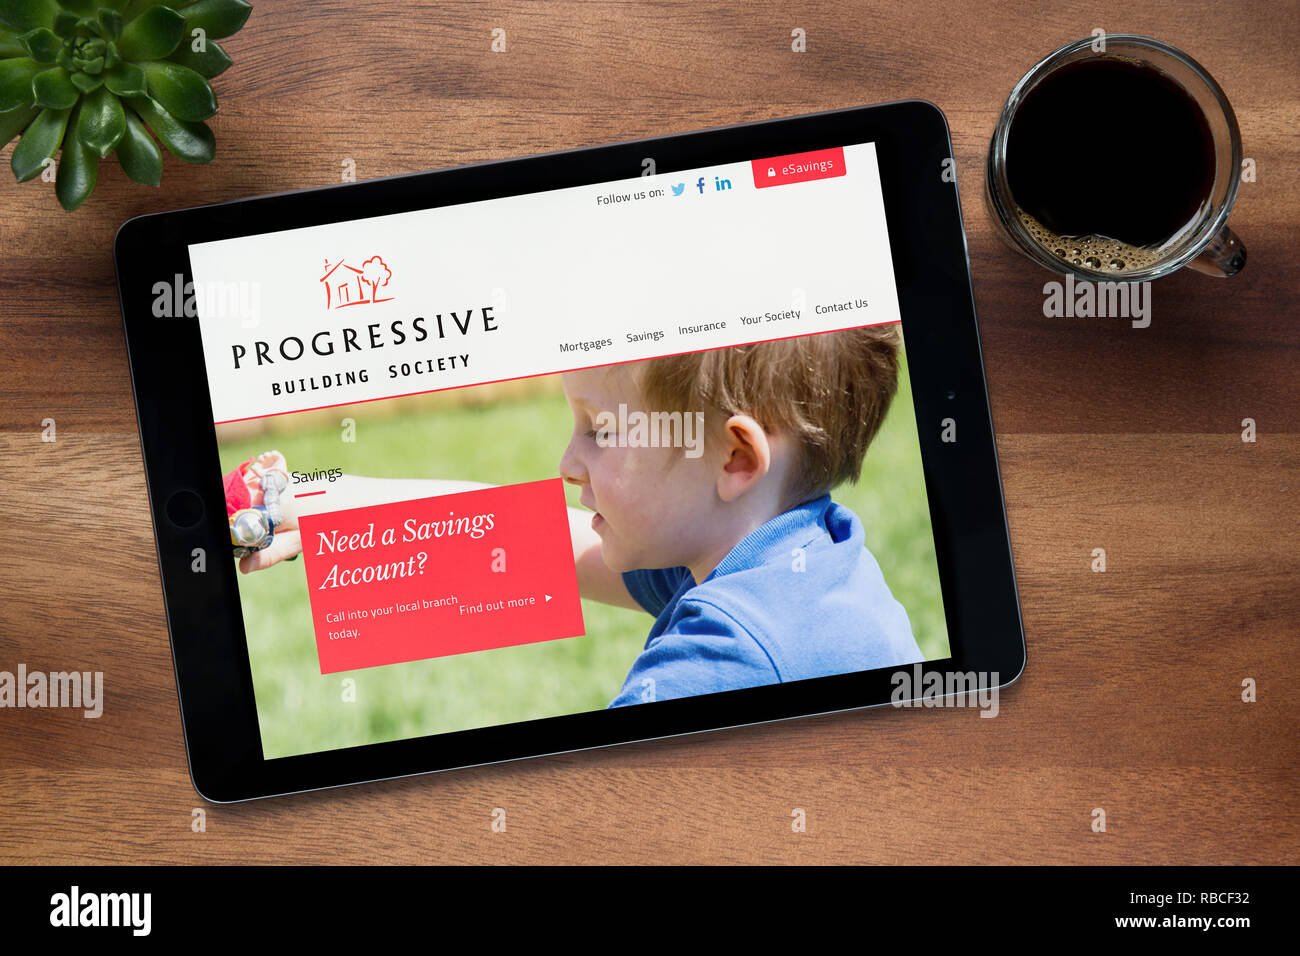 Il sito web di progressiva costruzione della società è visto su un tablet iPad, appoggiato su una tavola di legno (solo uso editoriale). Foto Stock